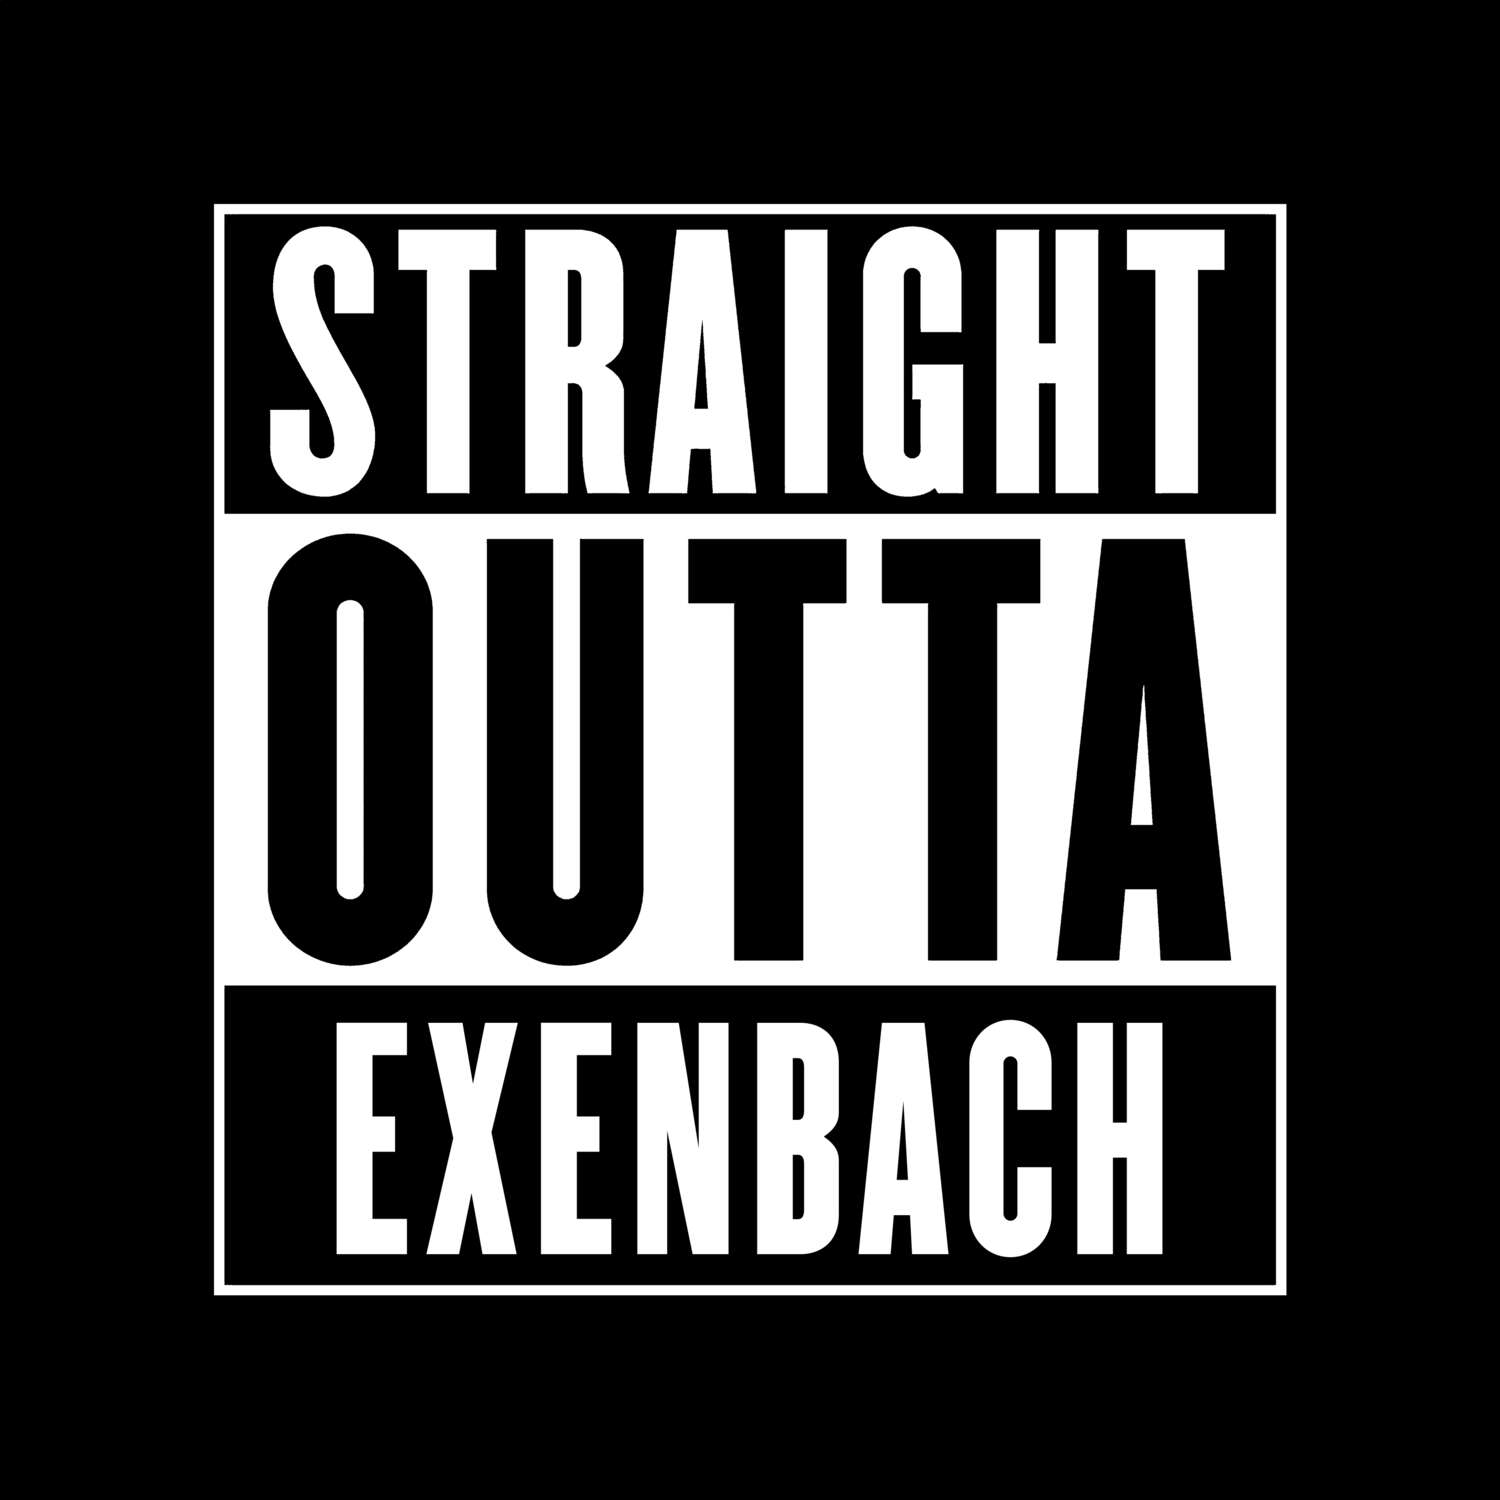 Exenbach T-Shirt »Straight Outta«